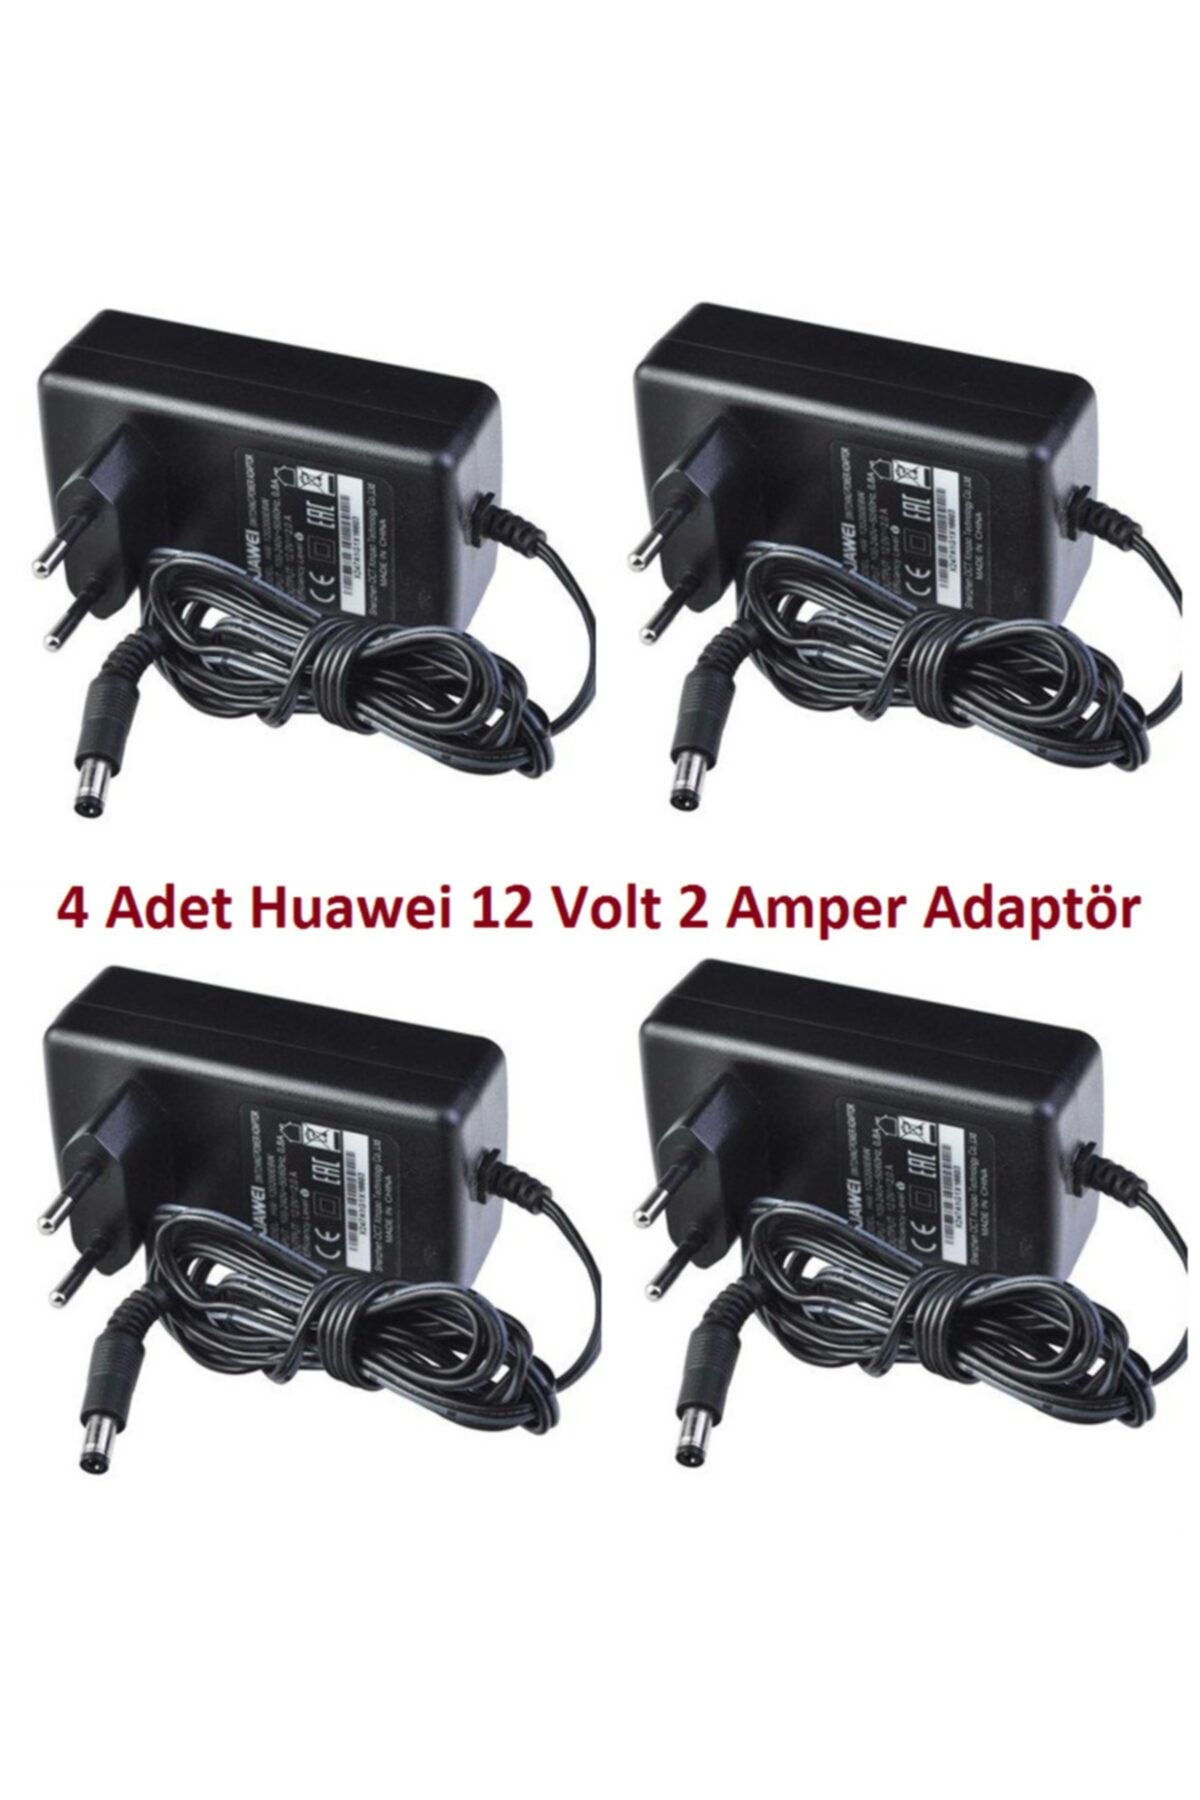 Huawei Hw 120200e6w 4 Adet 12v - 2a Modem Adaptör - Siyah